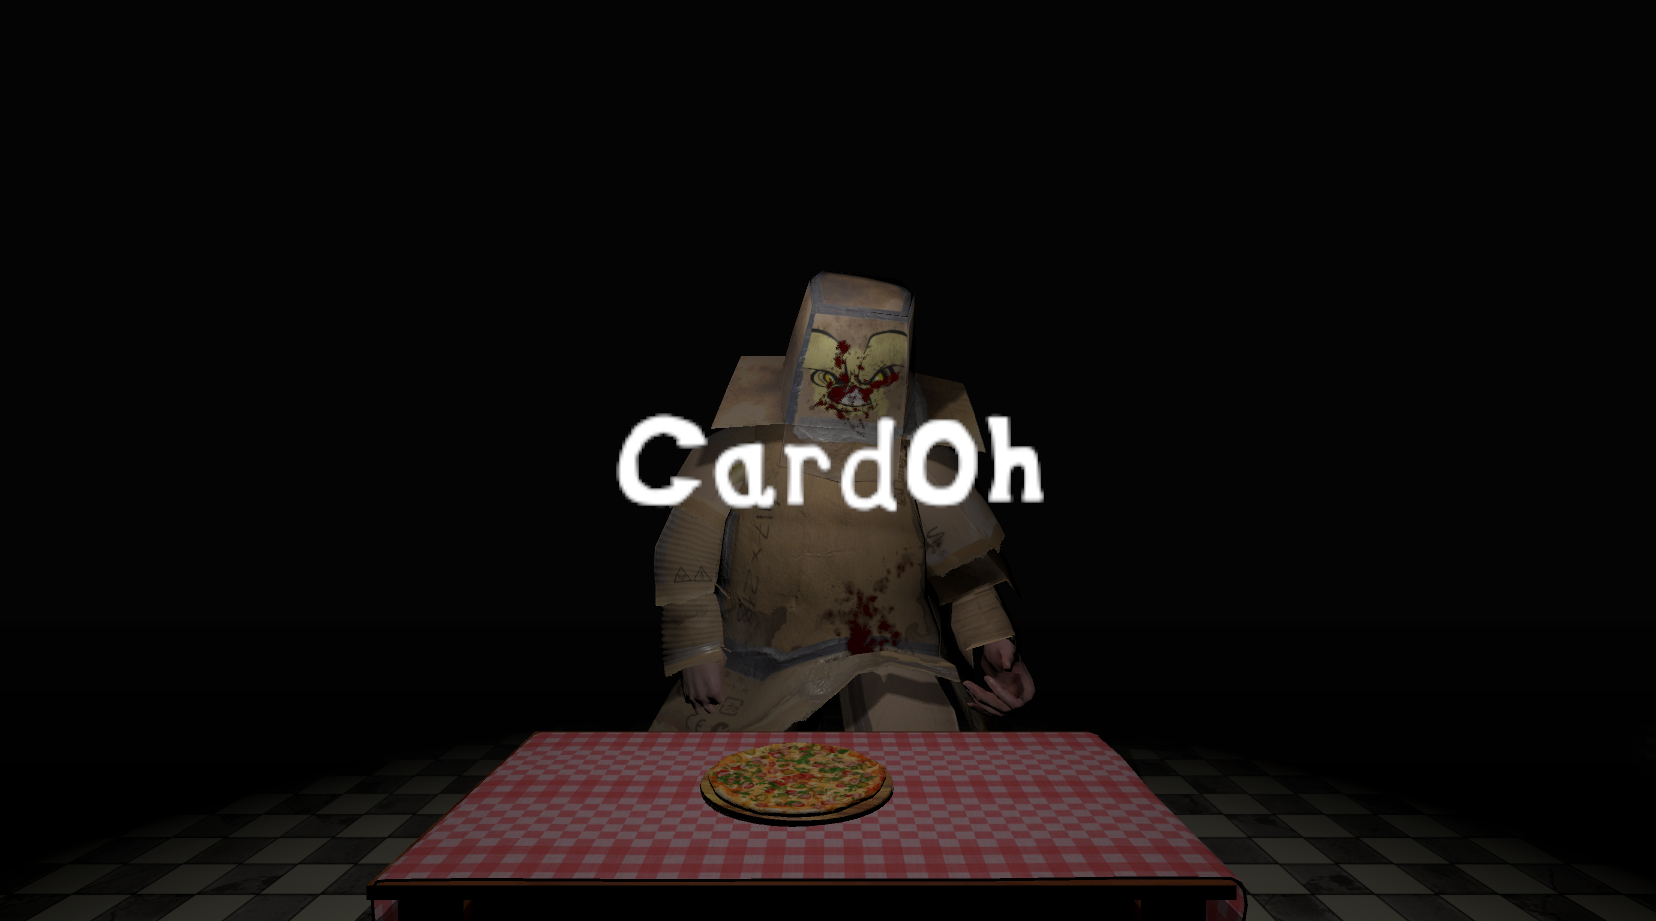 CardOh